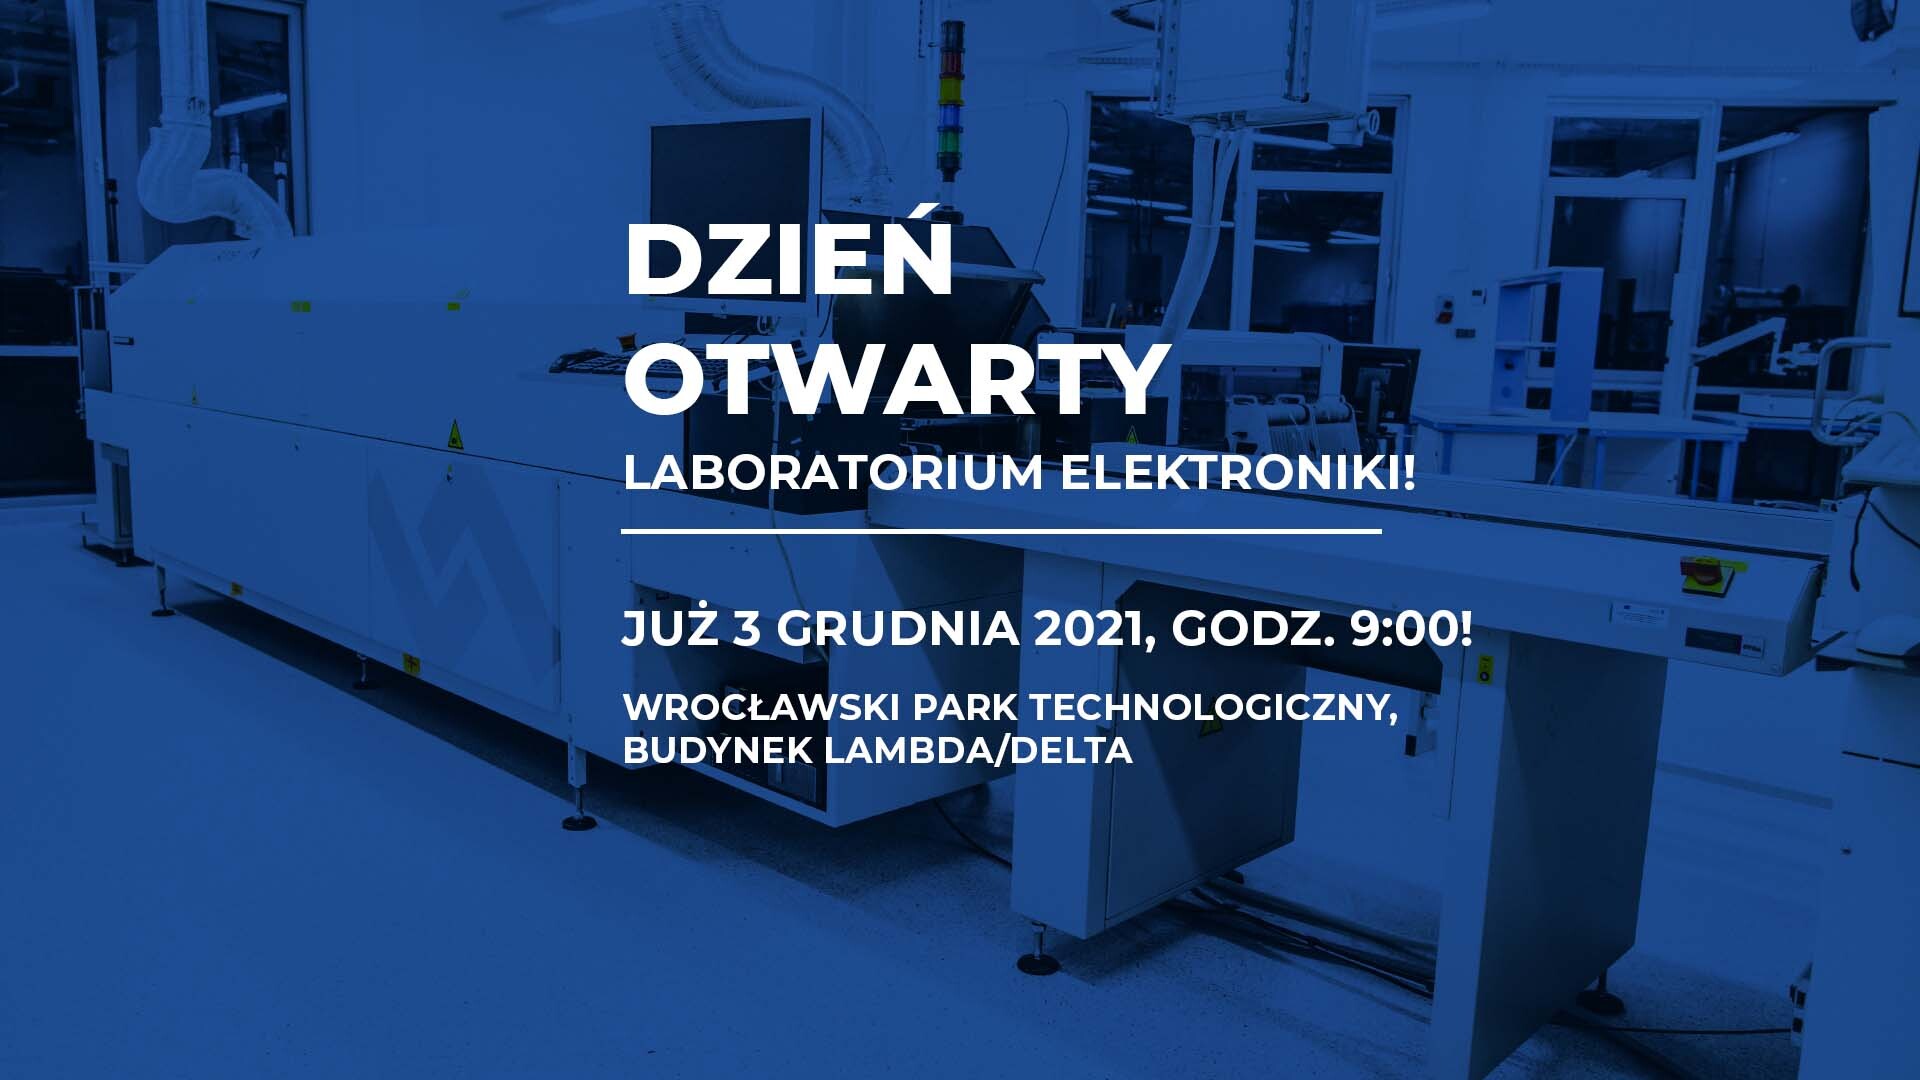 Dzień otwarty Laboratorium Elektroniki już 3 grudnia!